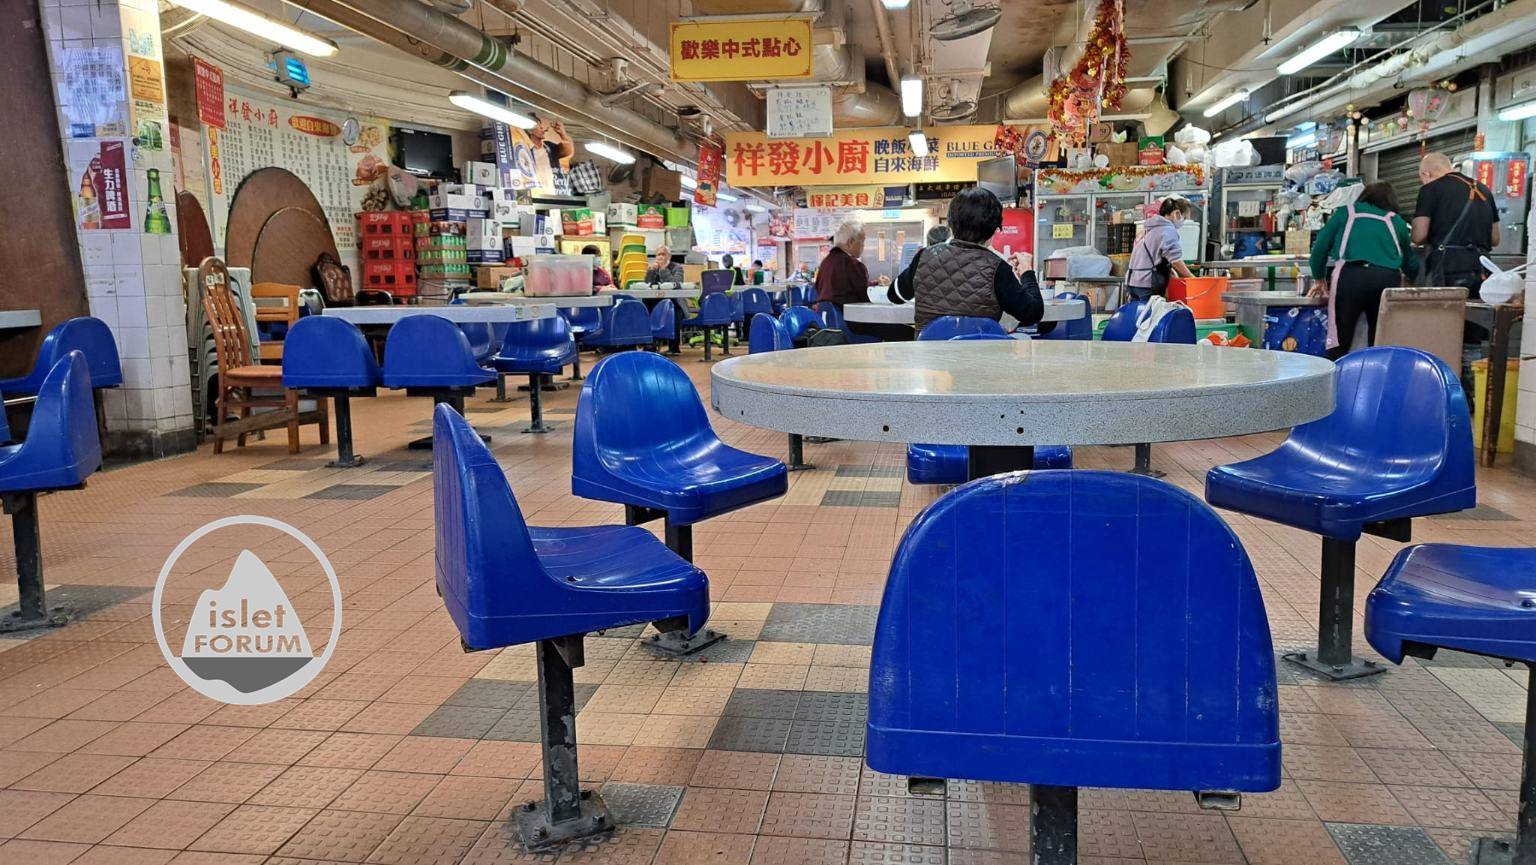 香港的熟食中心枱凳 Cooked Food Center Bench Stools in Hong Kong (2).jpg